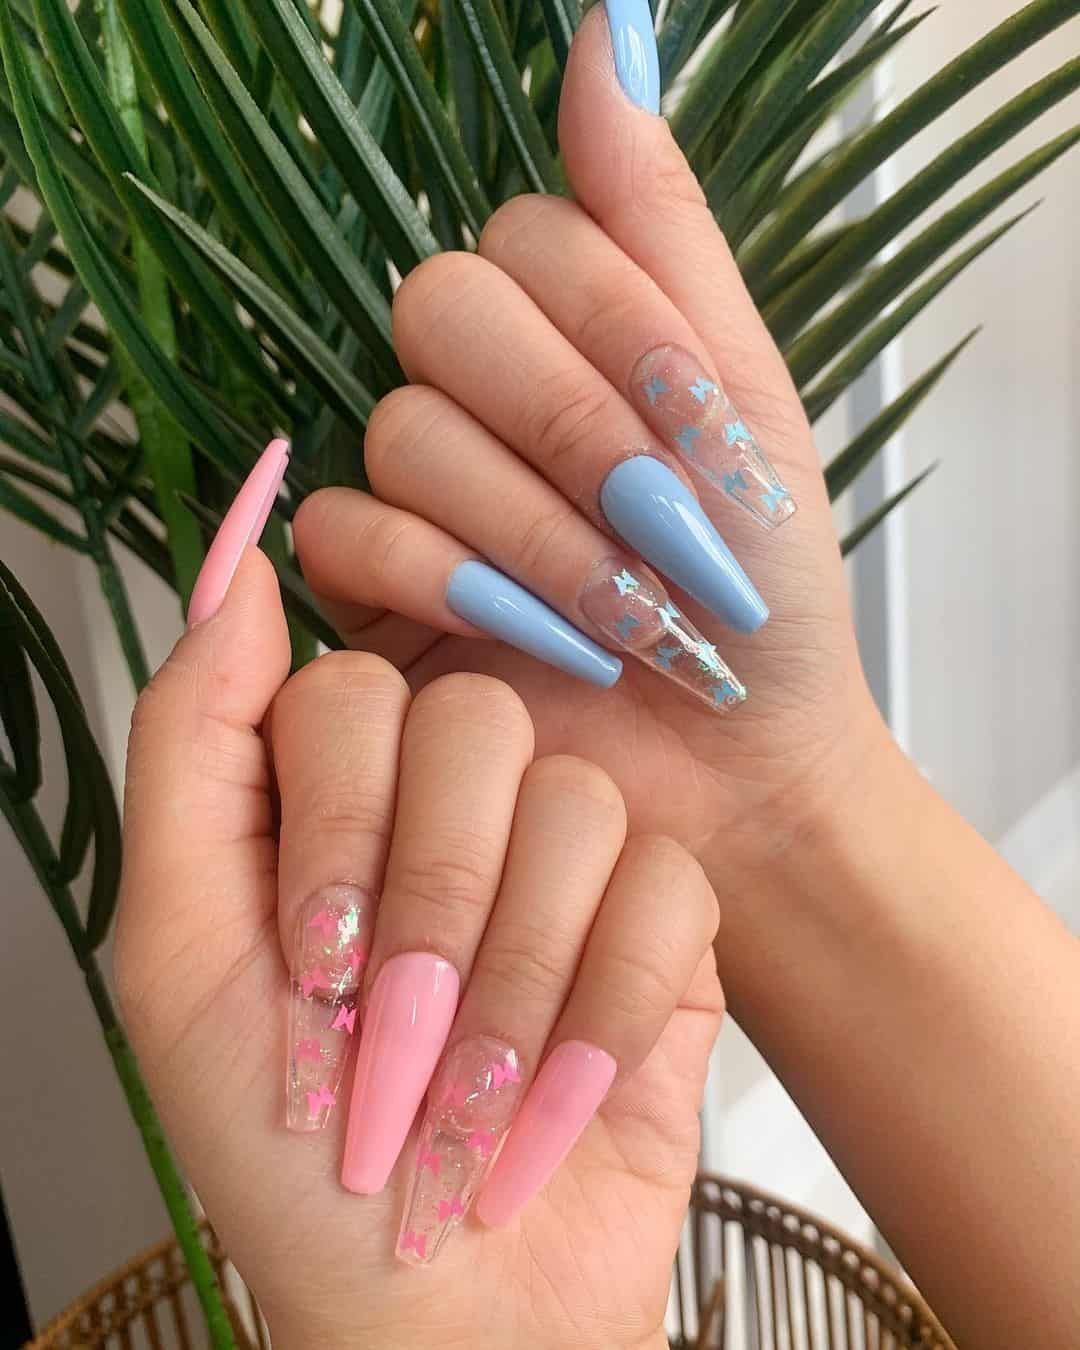 nails 2 cute